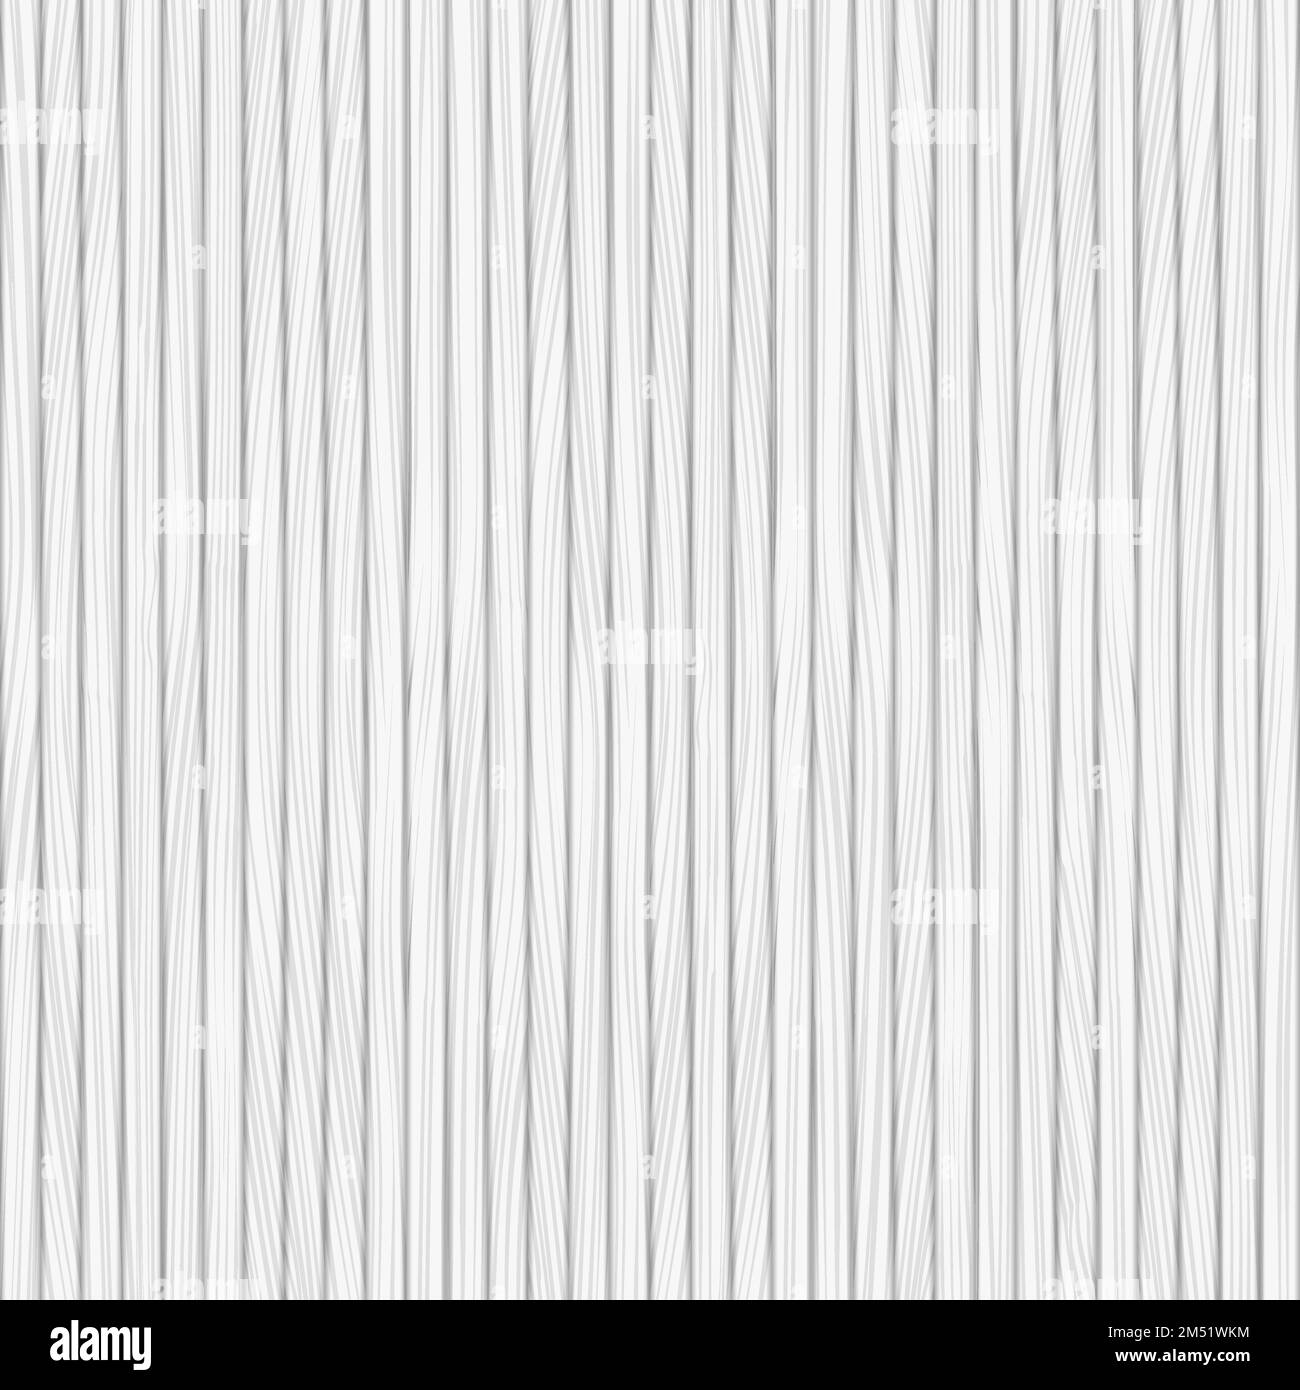 Weißer Holzhintergrund, Vektor-EPS10-Abbildung Stock Vektor